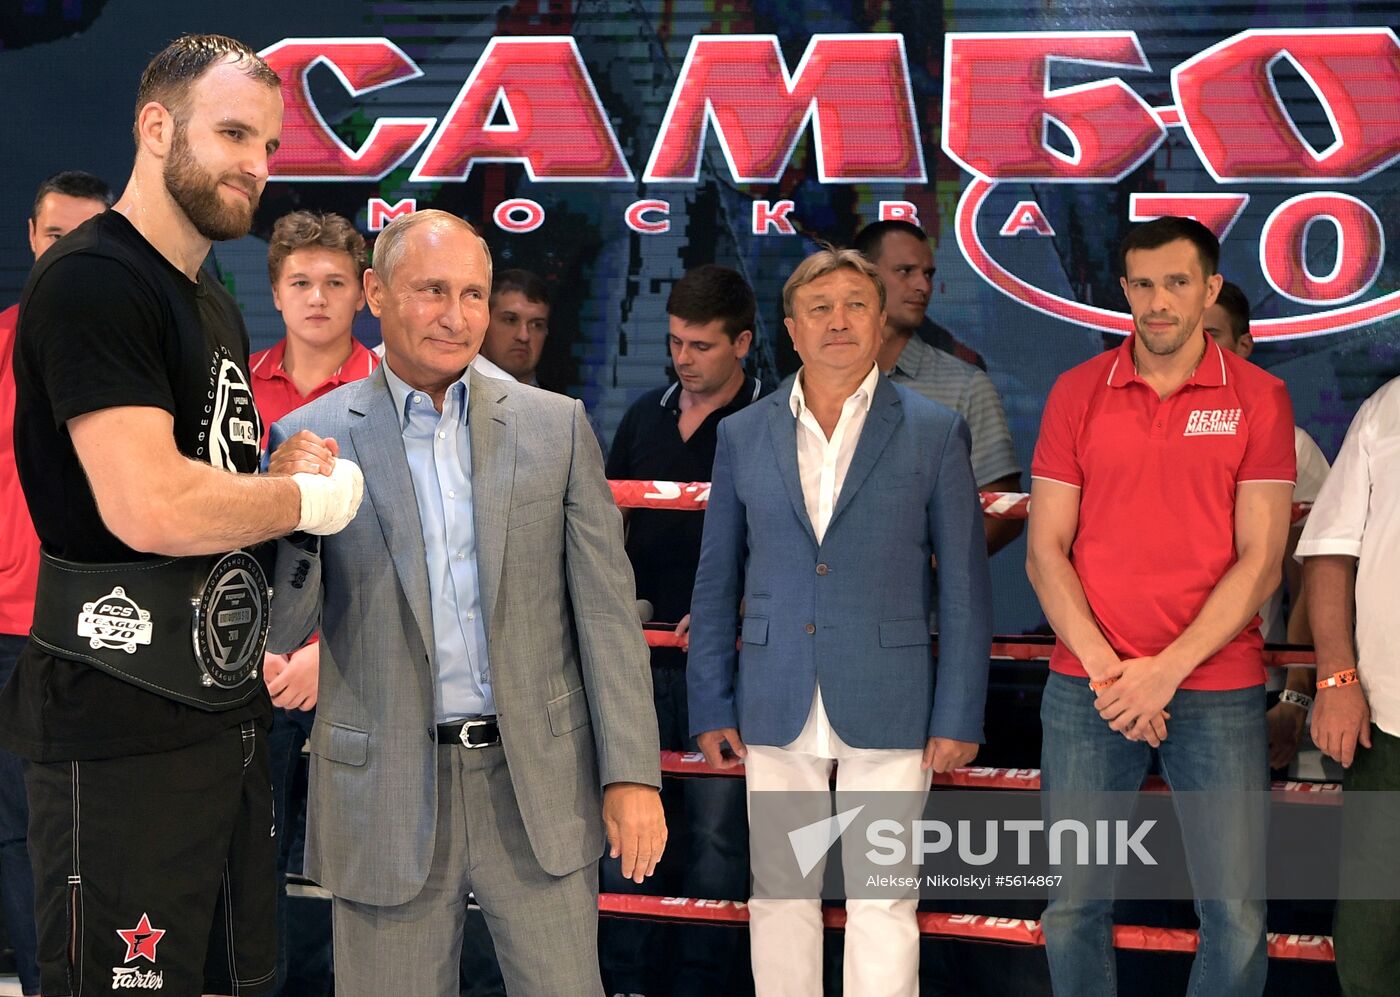 Vladimir Putin attends international combat sambo tournament